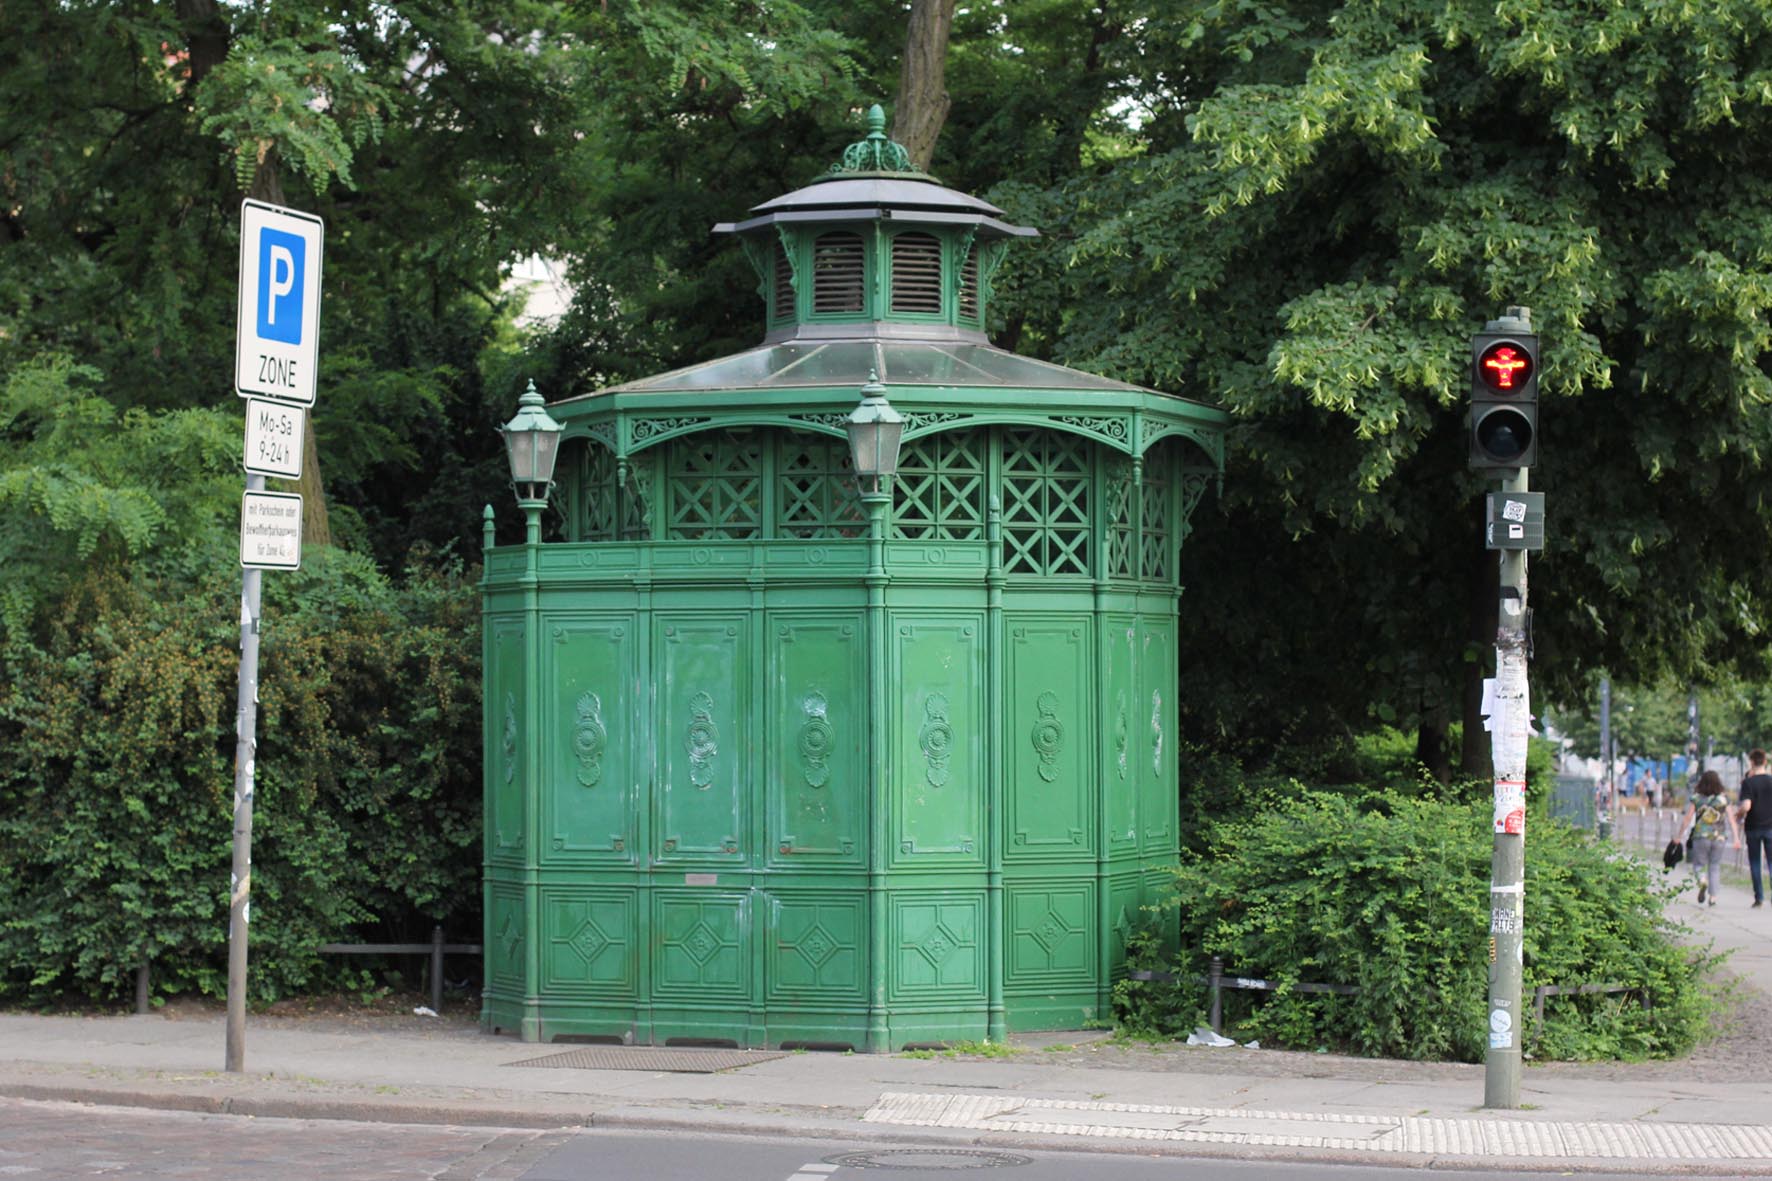 Café Achteck - Senefelderplatz - ein Exemplar von Berlin's klassischen grün-lackierten gusseisernen Bedürfnisanstalten aus dem 19. Jahrhundert